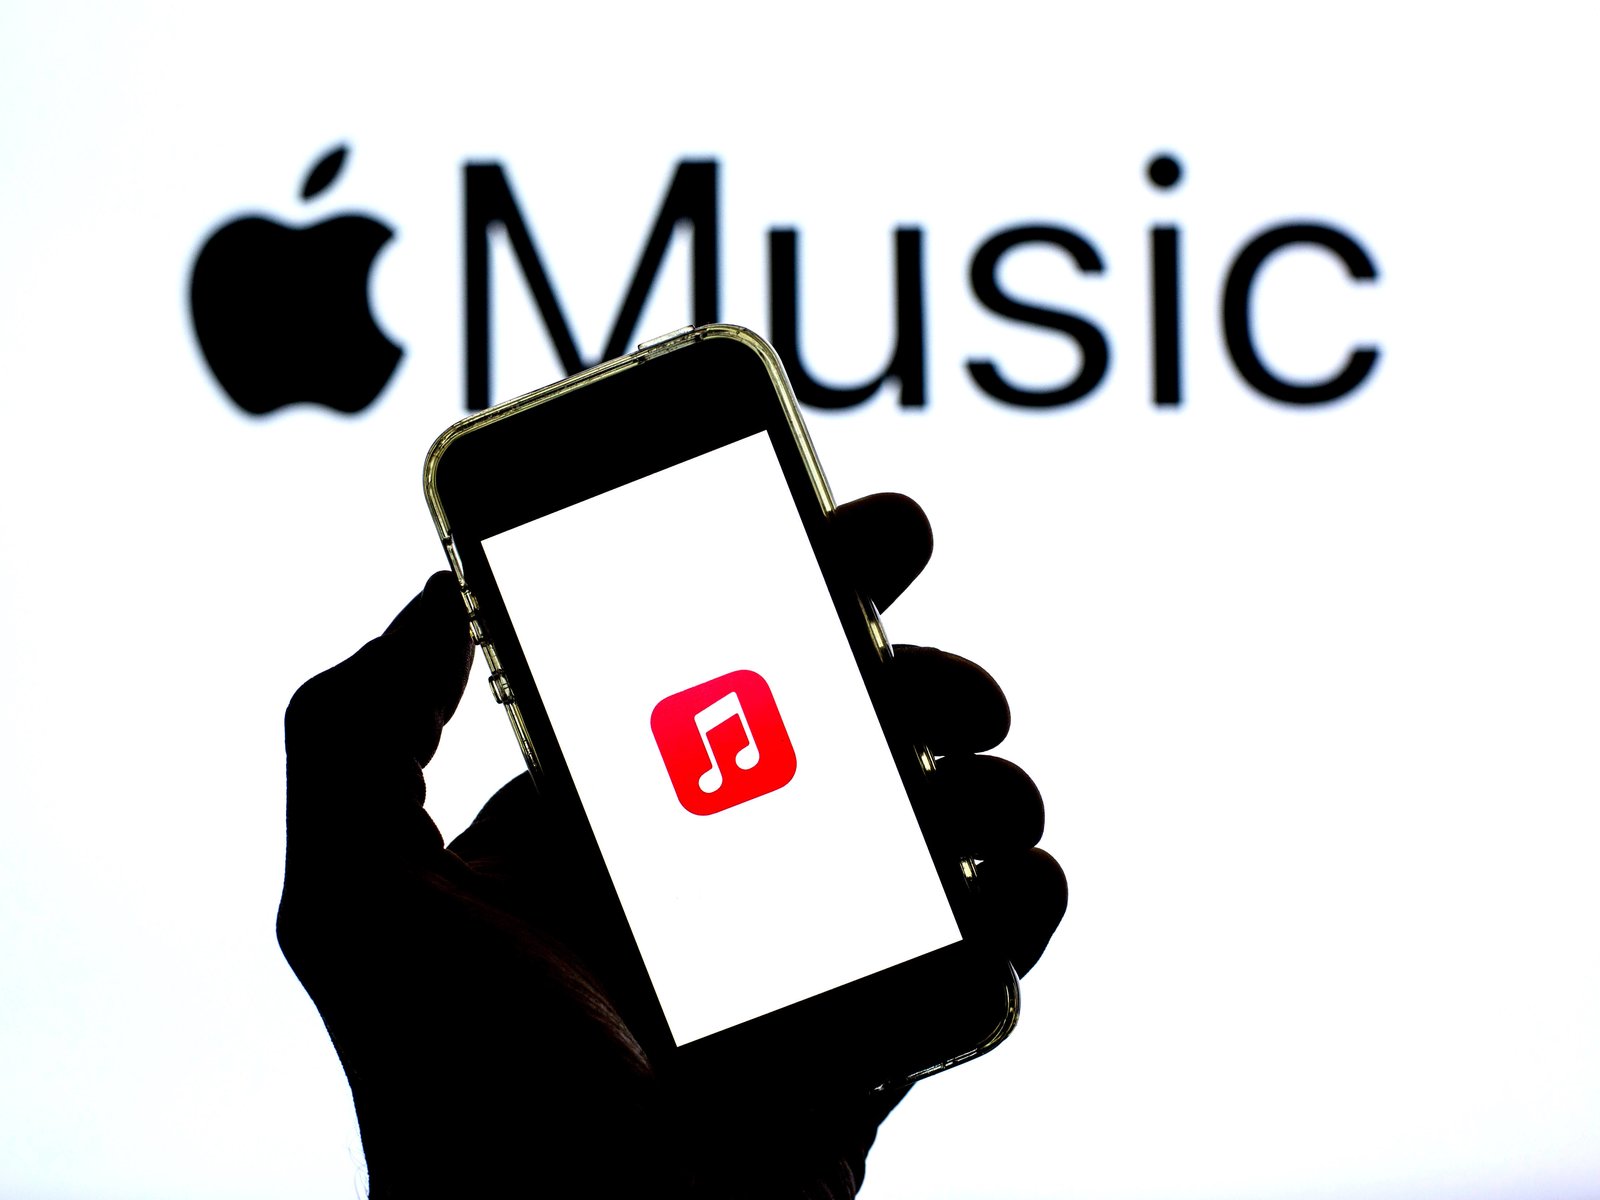 Apple Music vier Monate kostenlos testen 